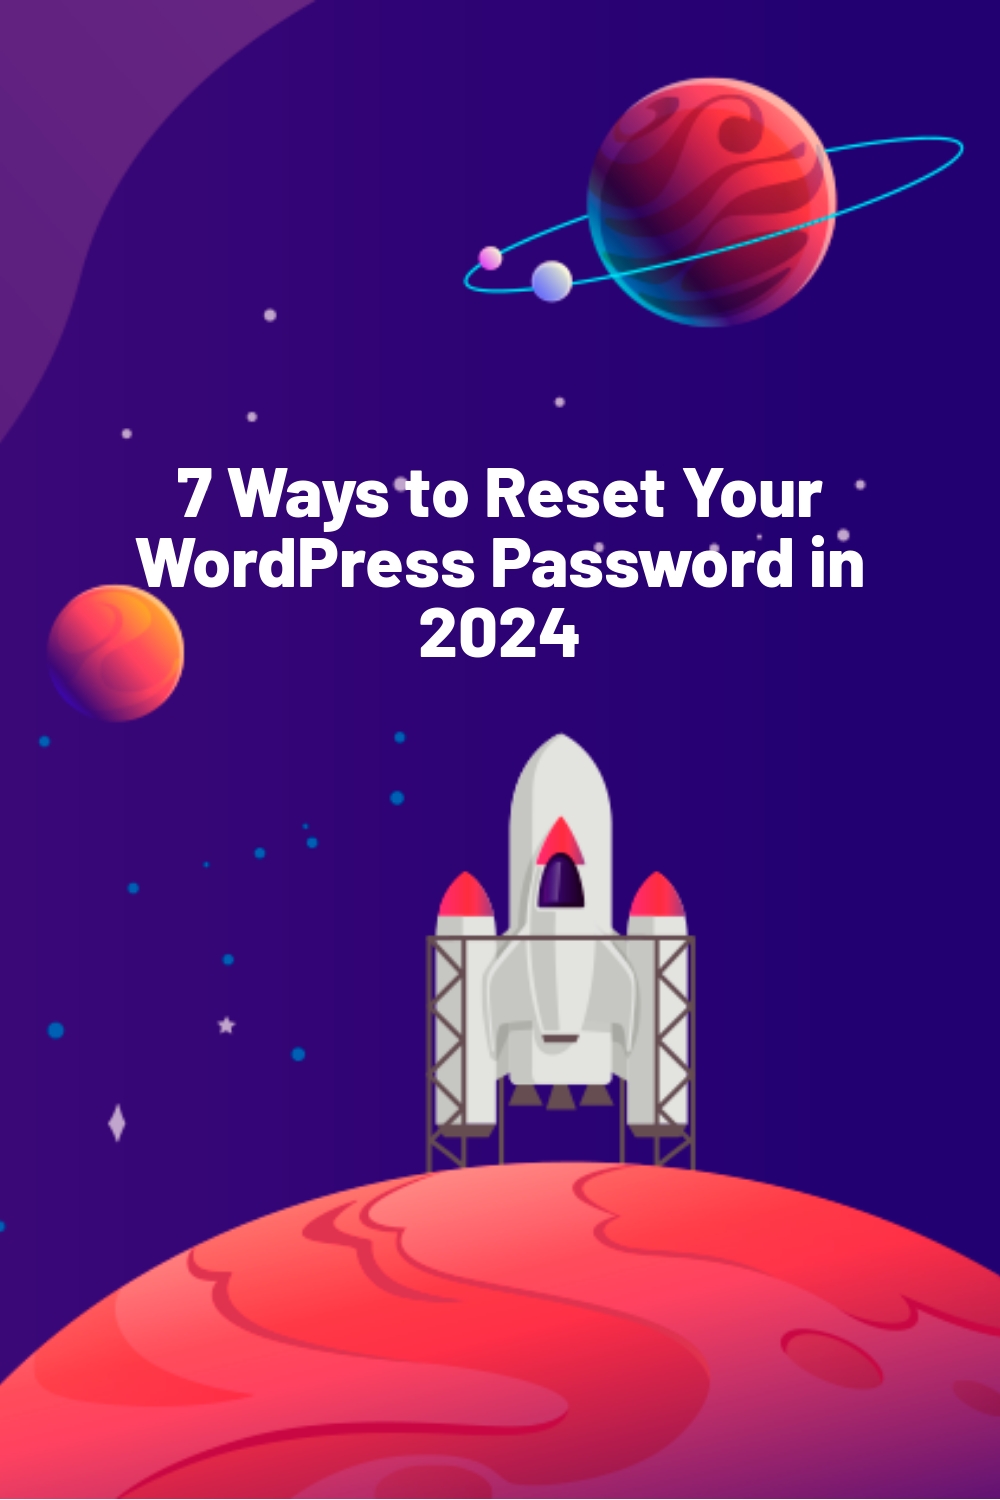 7 Ways to Reset Your WordPress Password in 2024